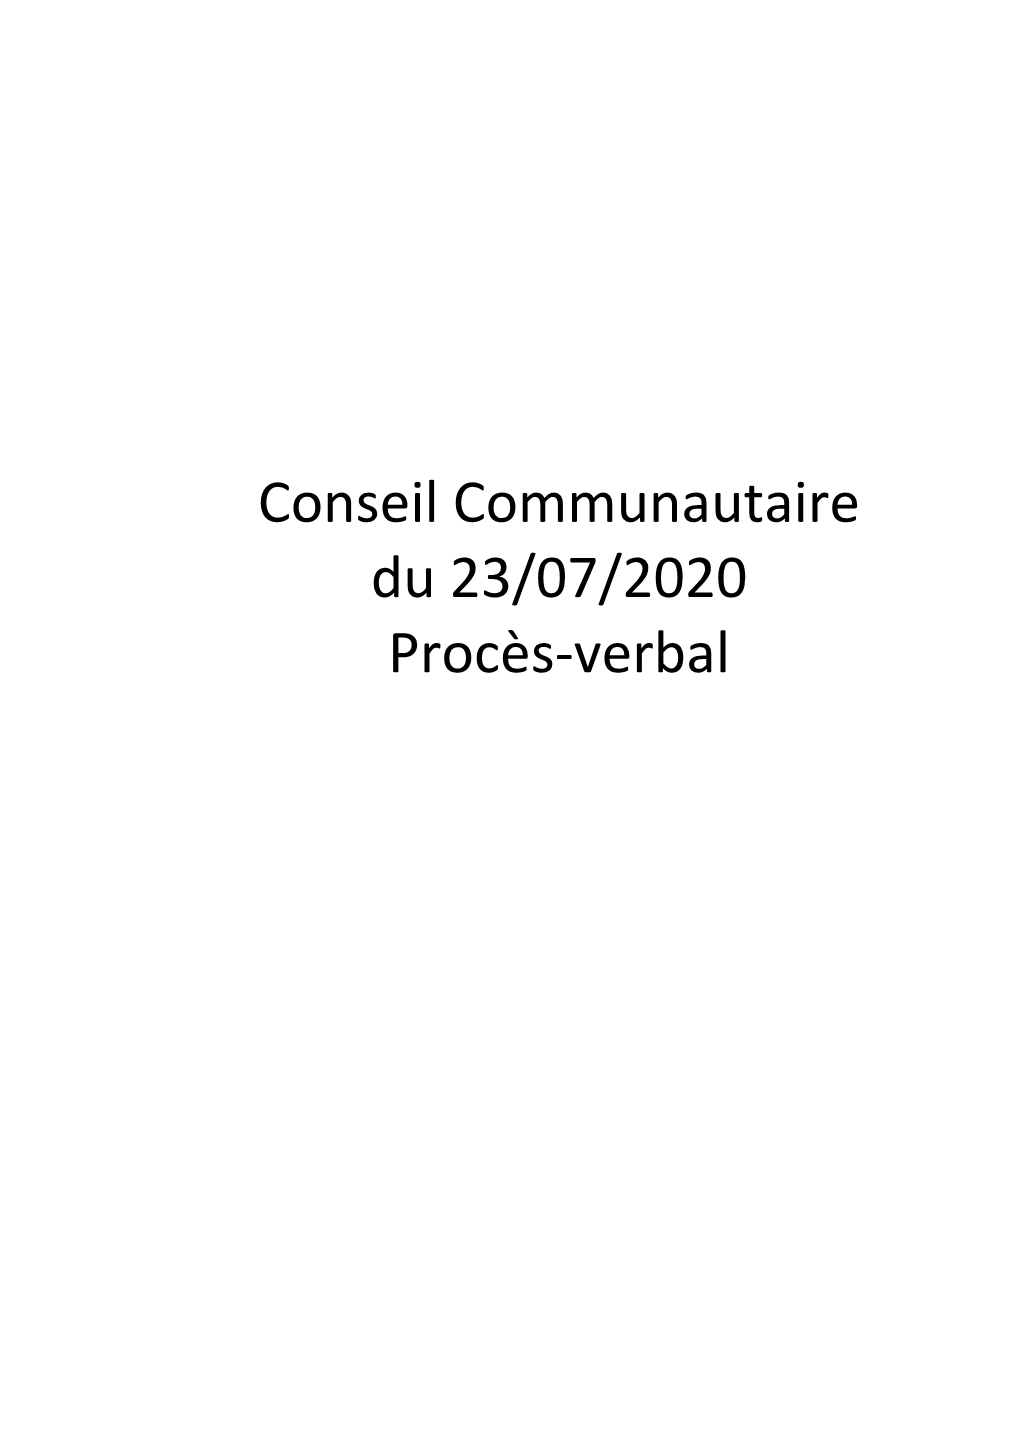 Conseil Communautaire Du 23/07/2020 Procès-Verbal